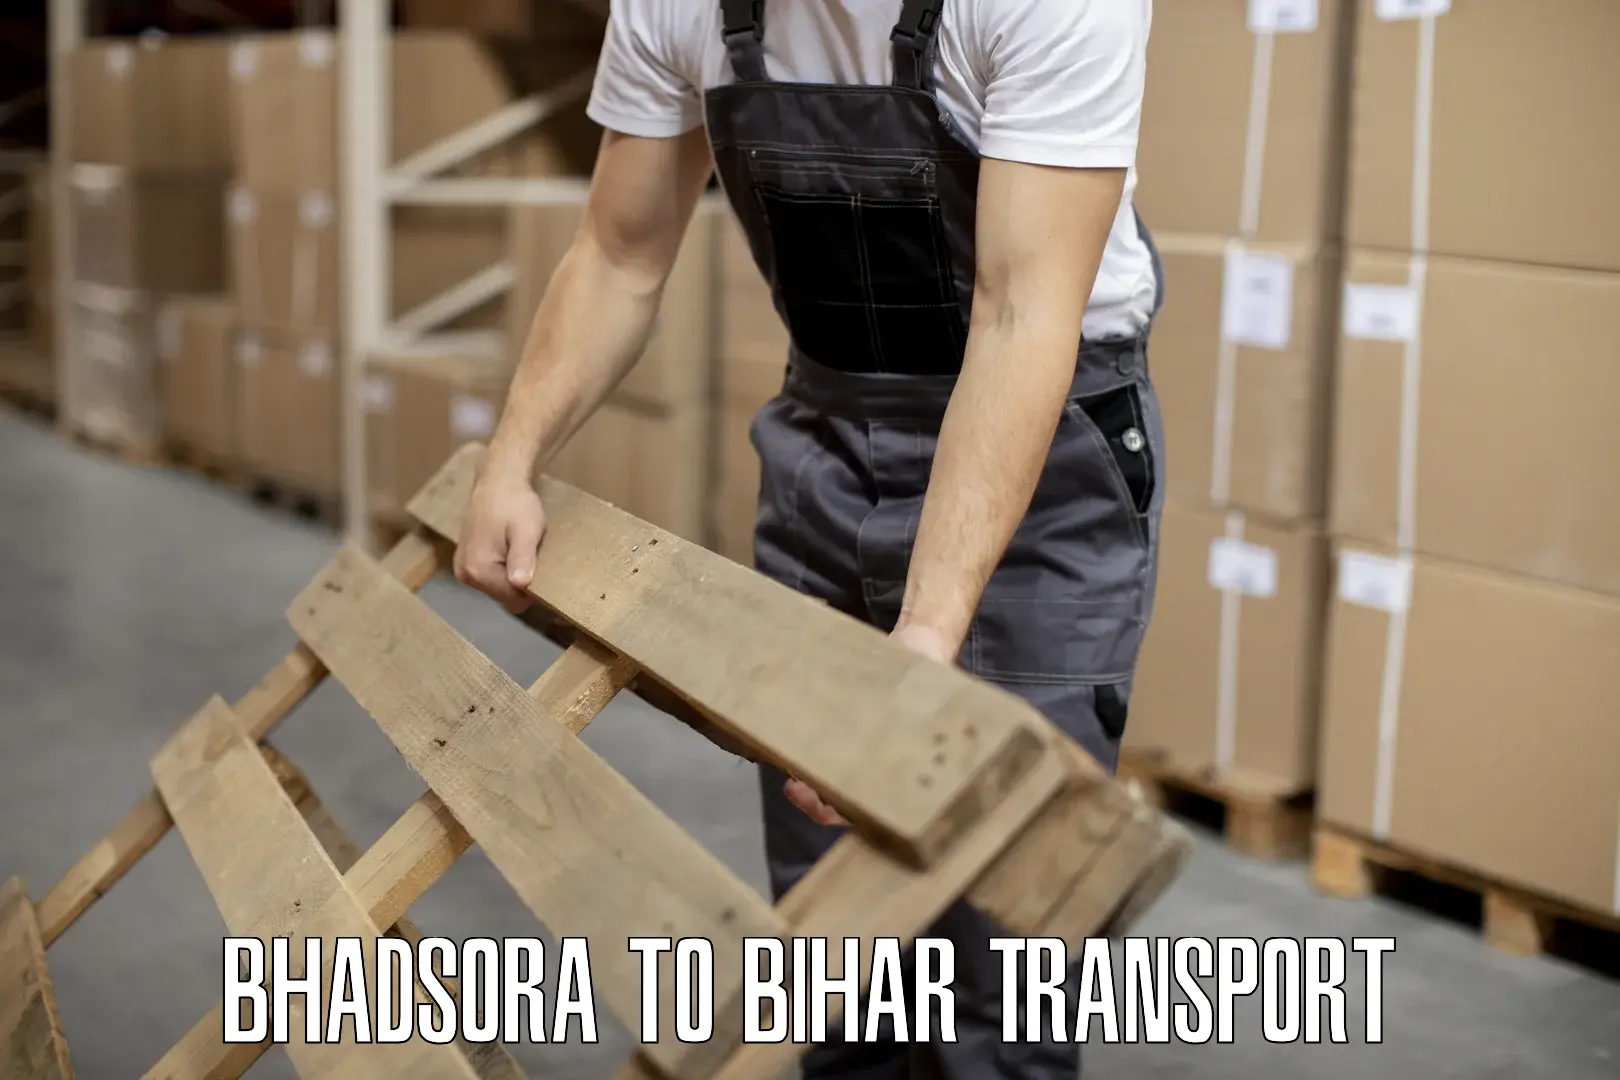 Bike shipping service Bhadsora to Piro